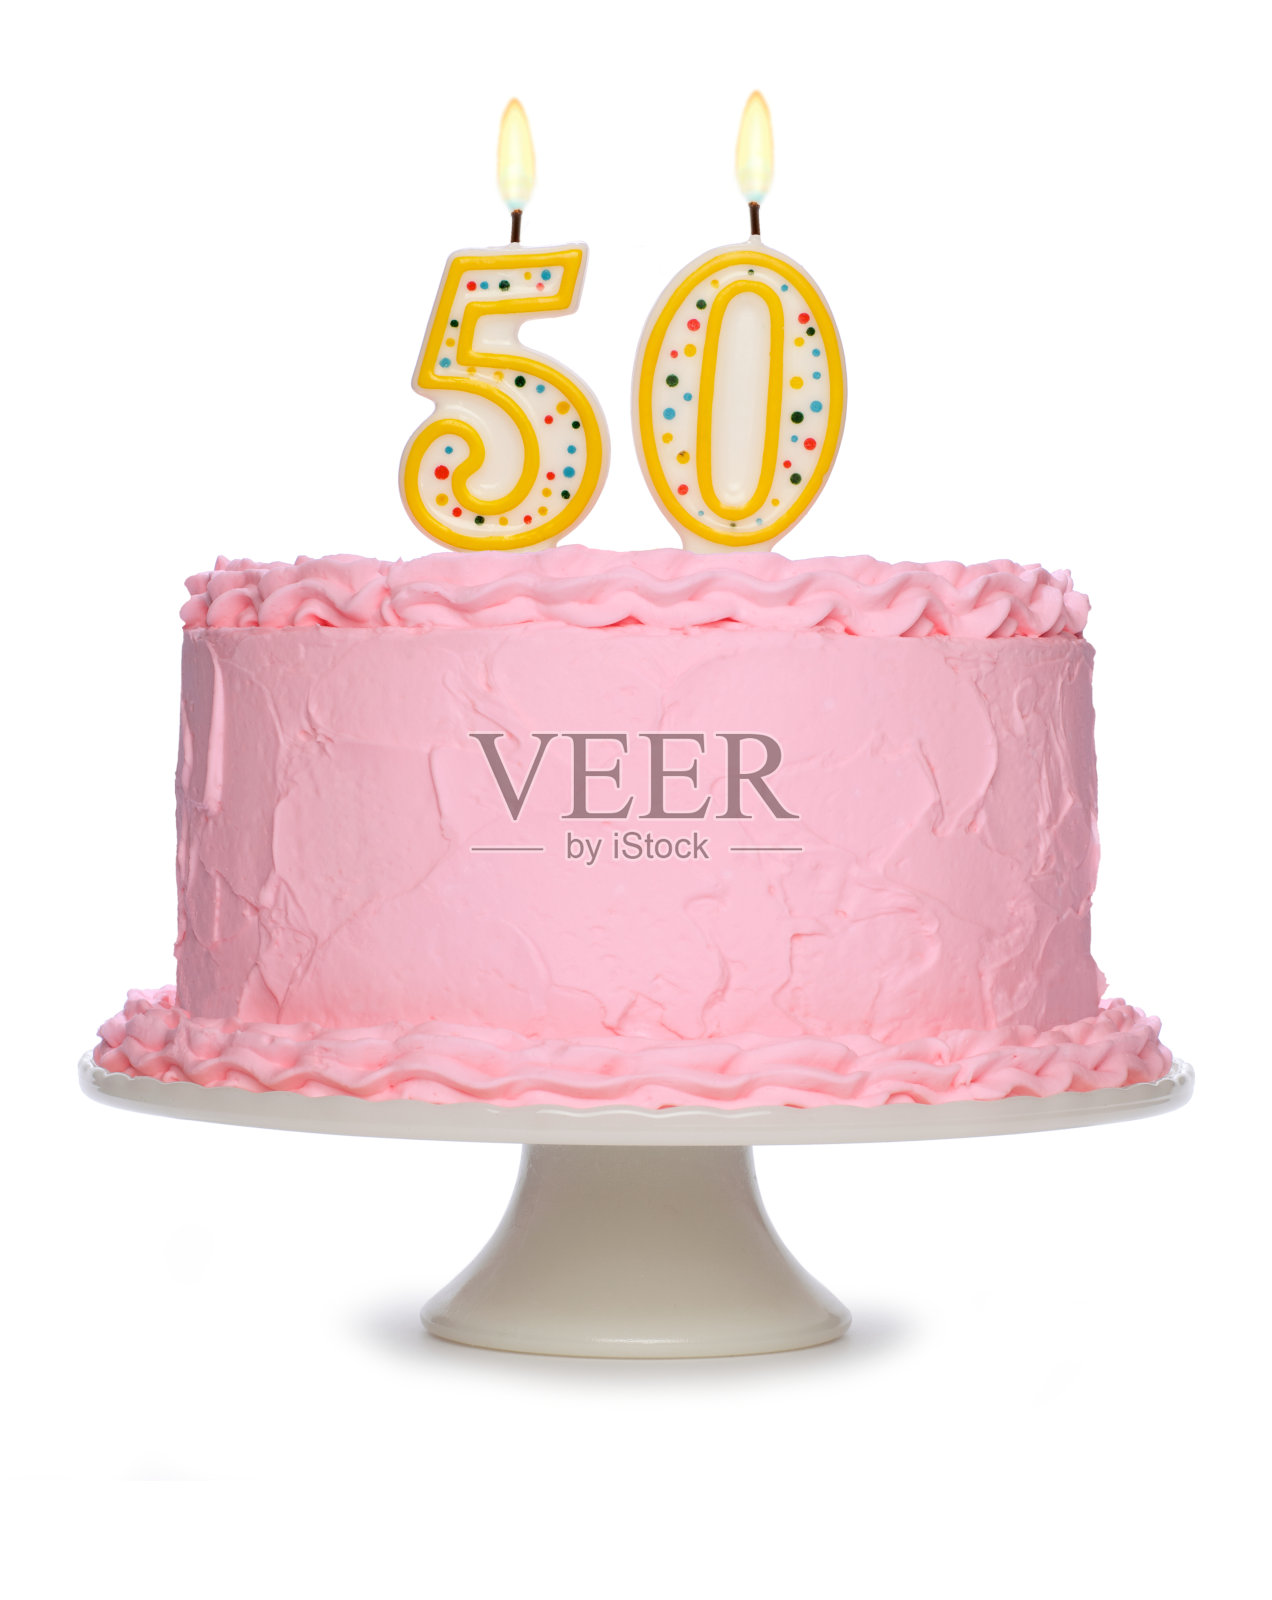 用粉红色糖霜和蜡烛装饰的生日蛋糕照片摄影图片